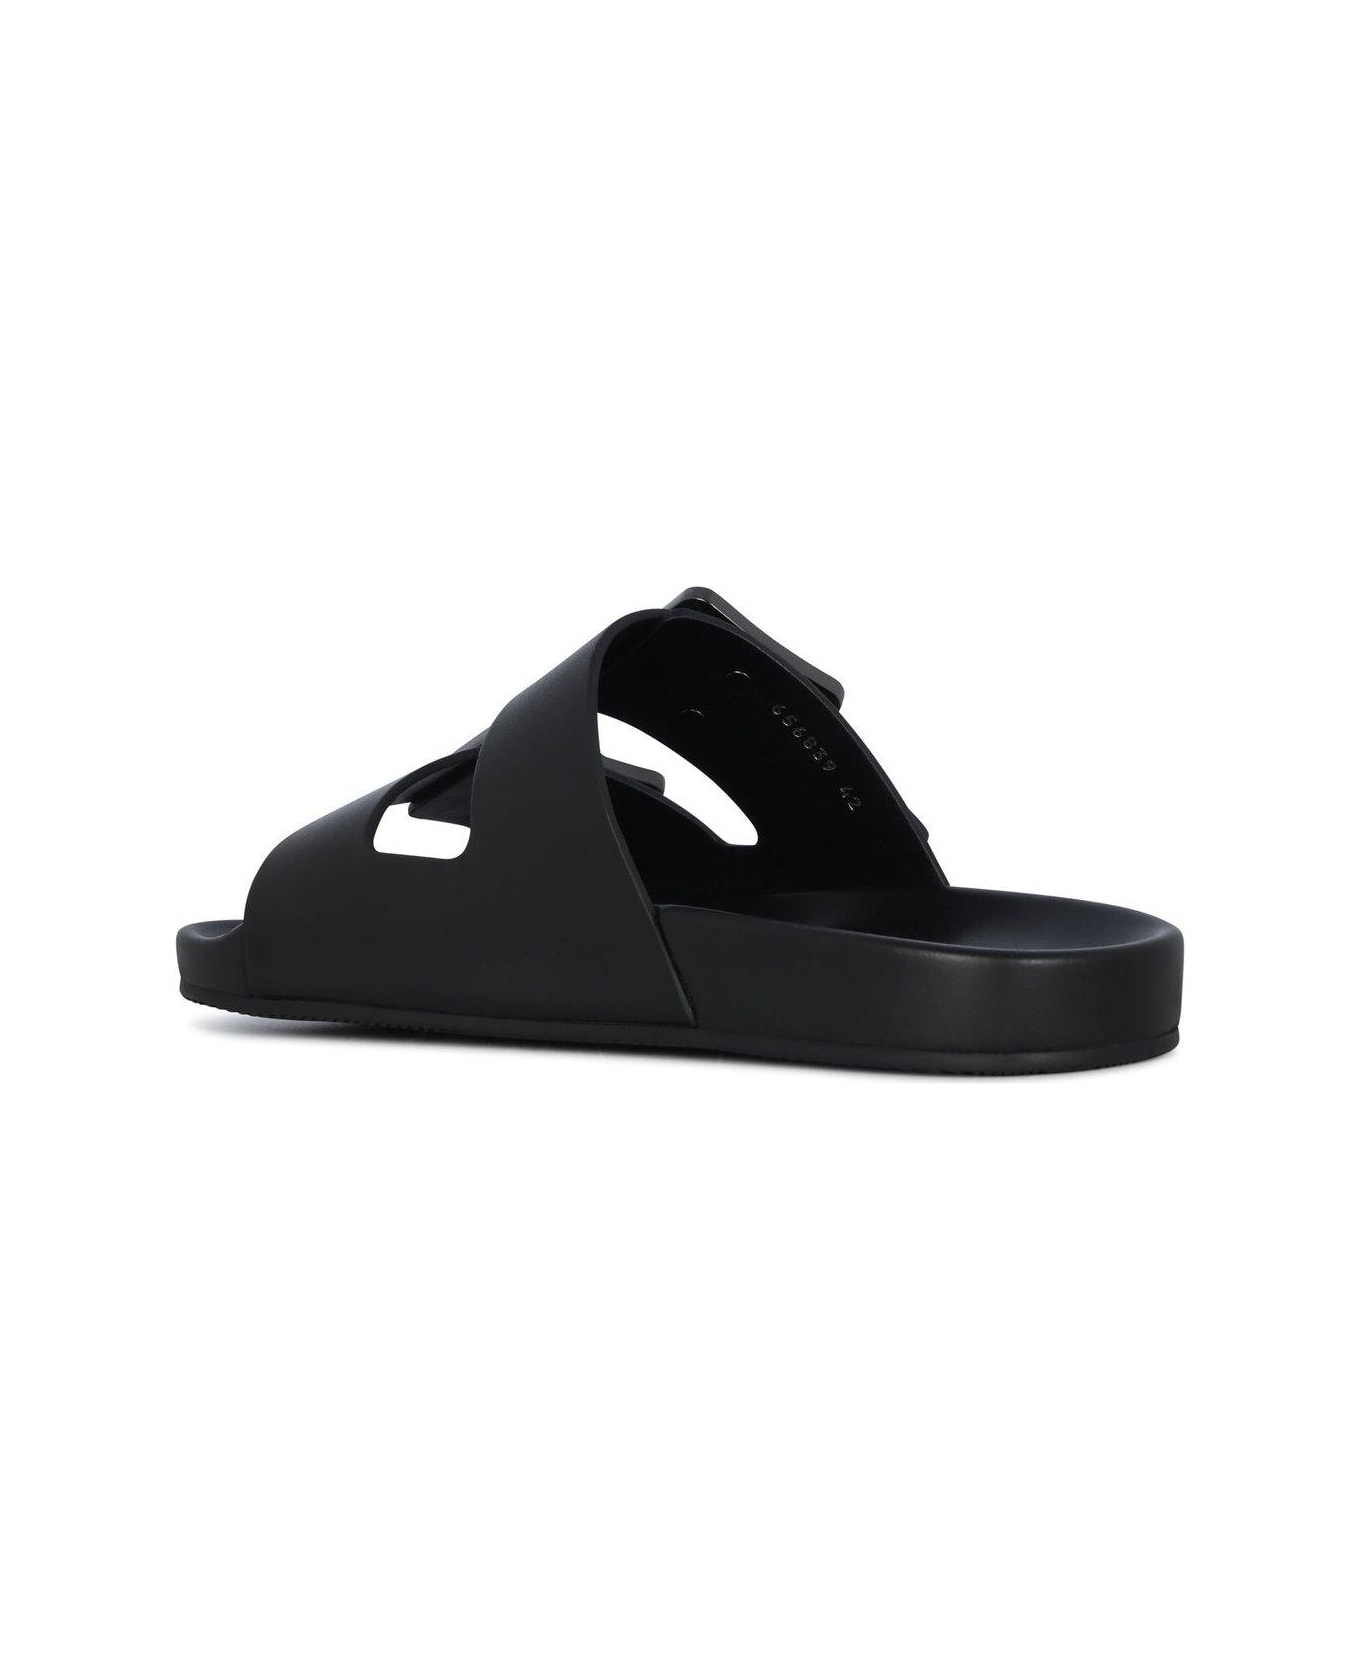 Balenciaga Mallorca Strap Sandals - BLACK